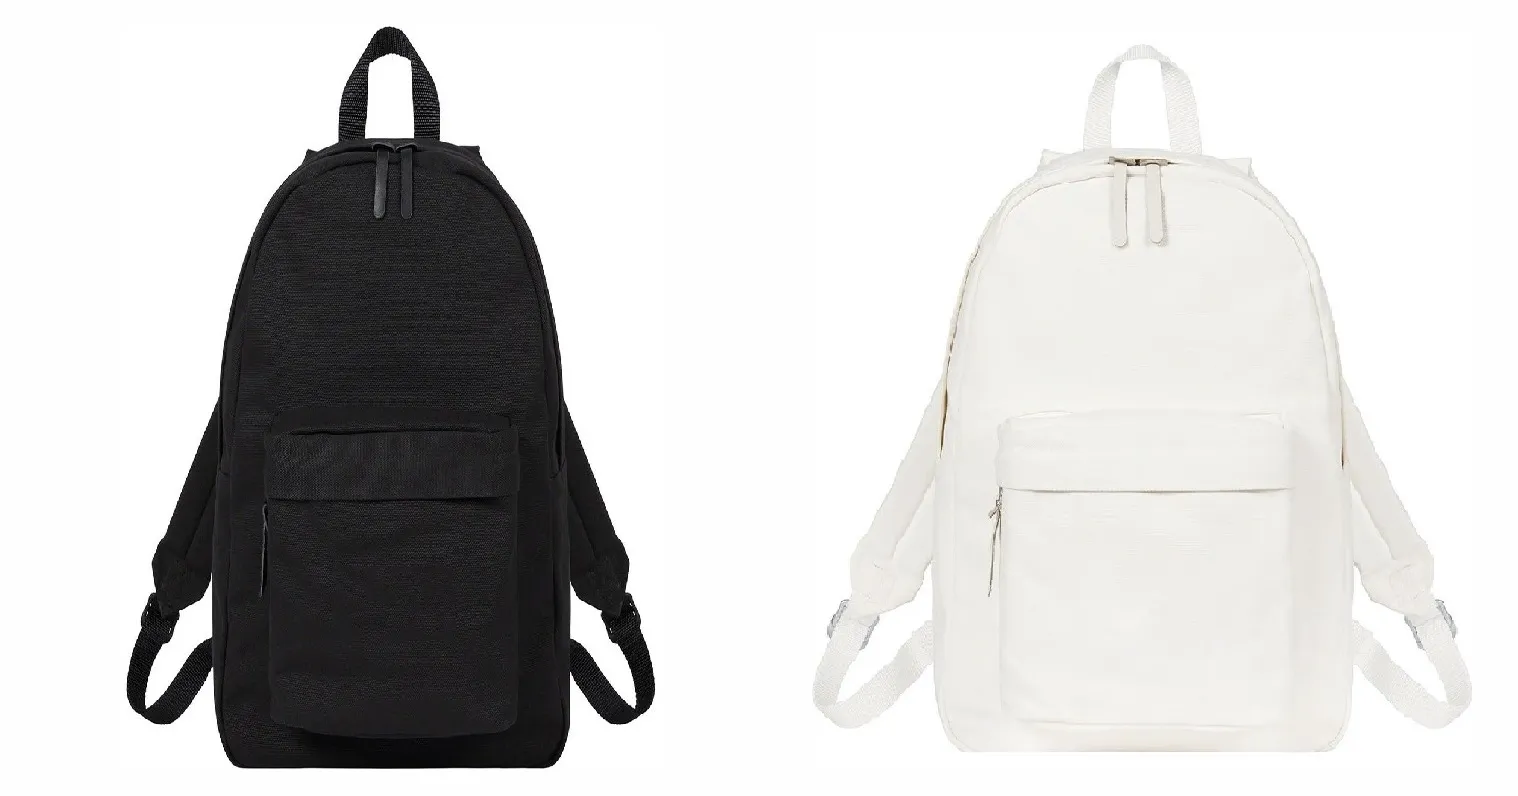 Hohe Qualität Leinwand Rucksack Logo Schwarz Weiß Farbe Auf Lager Schultasche Frauen Männer Kinder Outdoor Bags